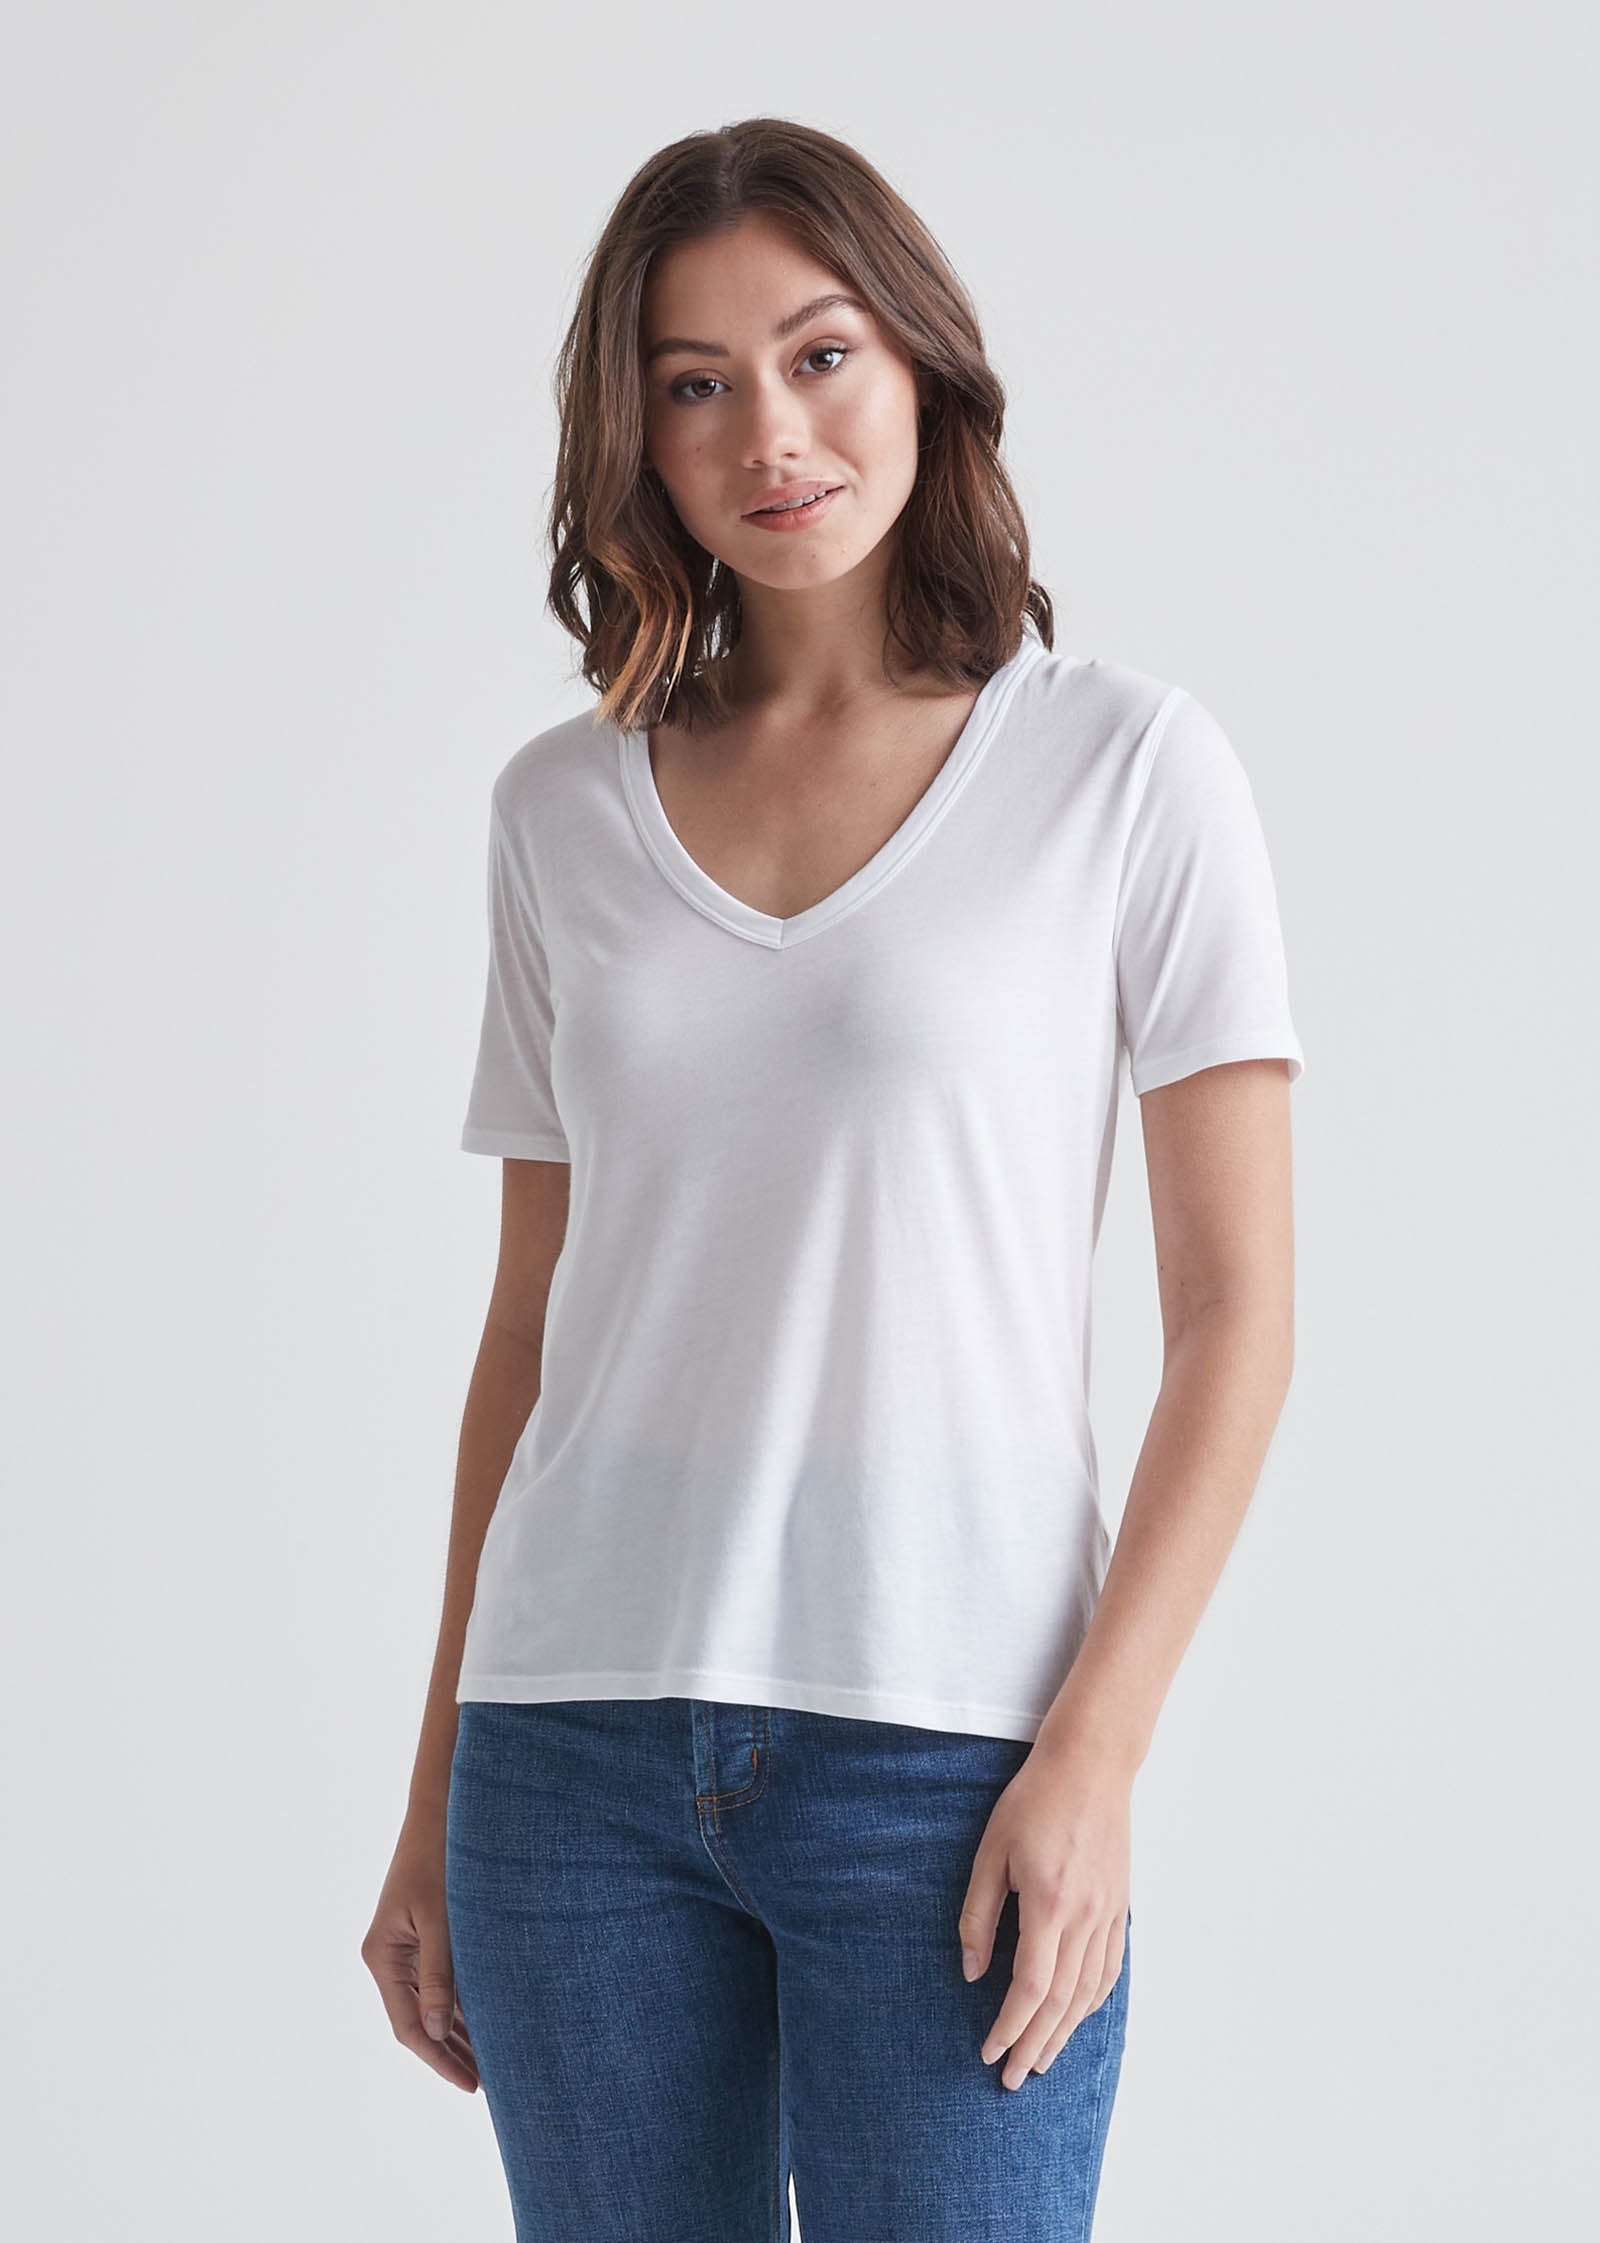 Women's Soft Lightweight White V-Neck T-Shirt Front